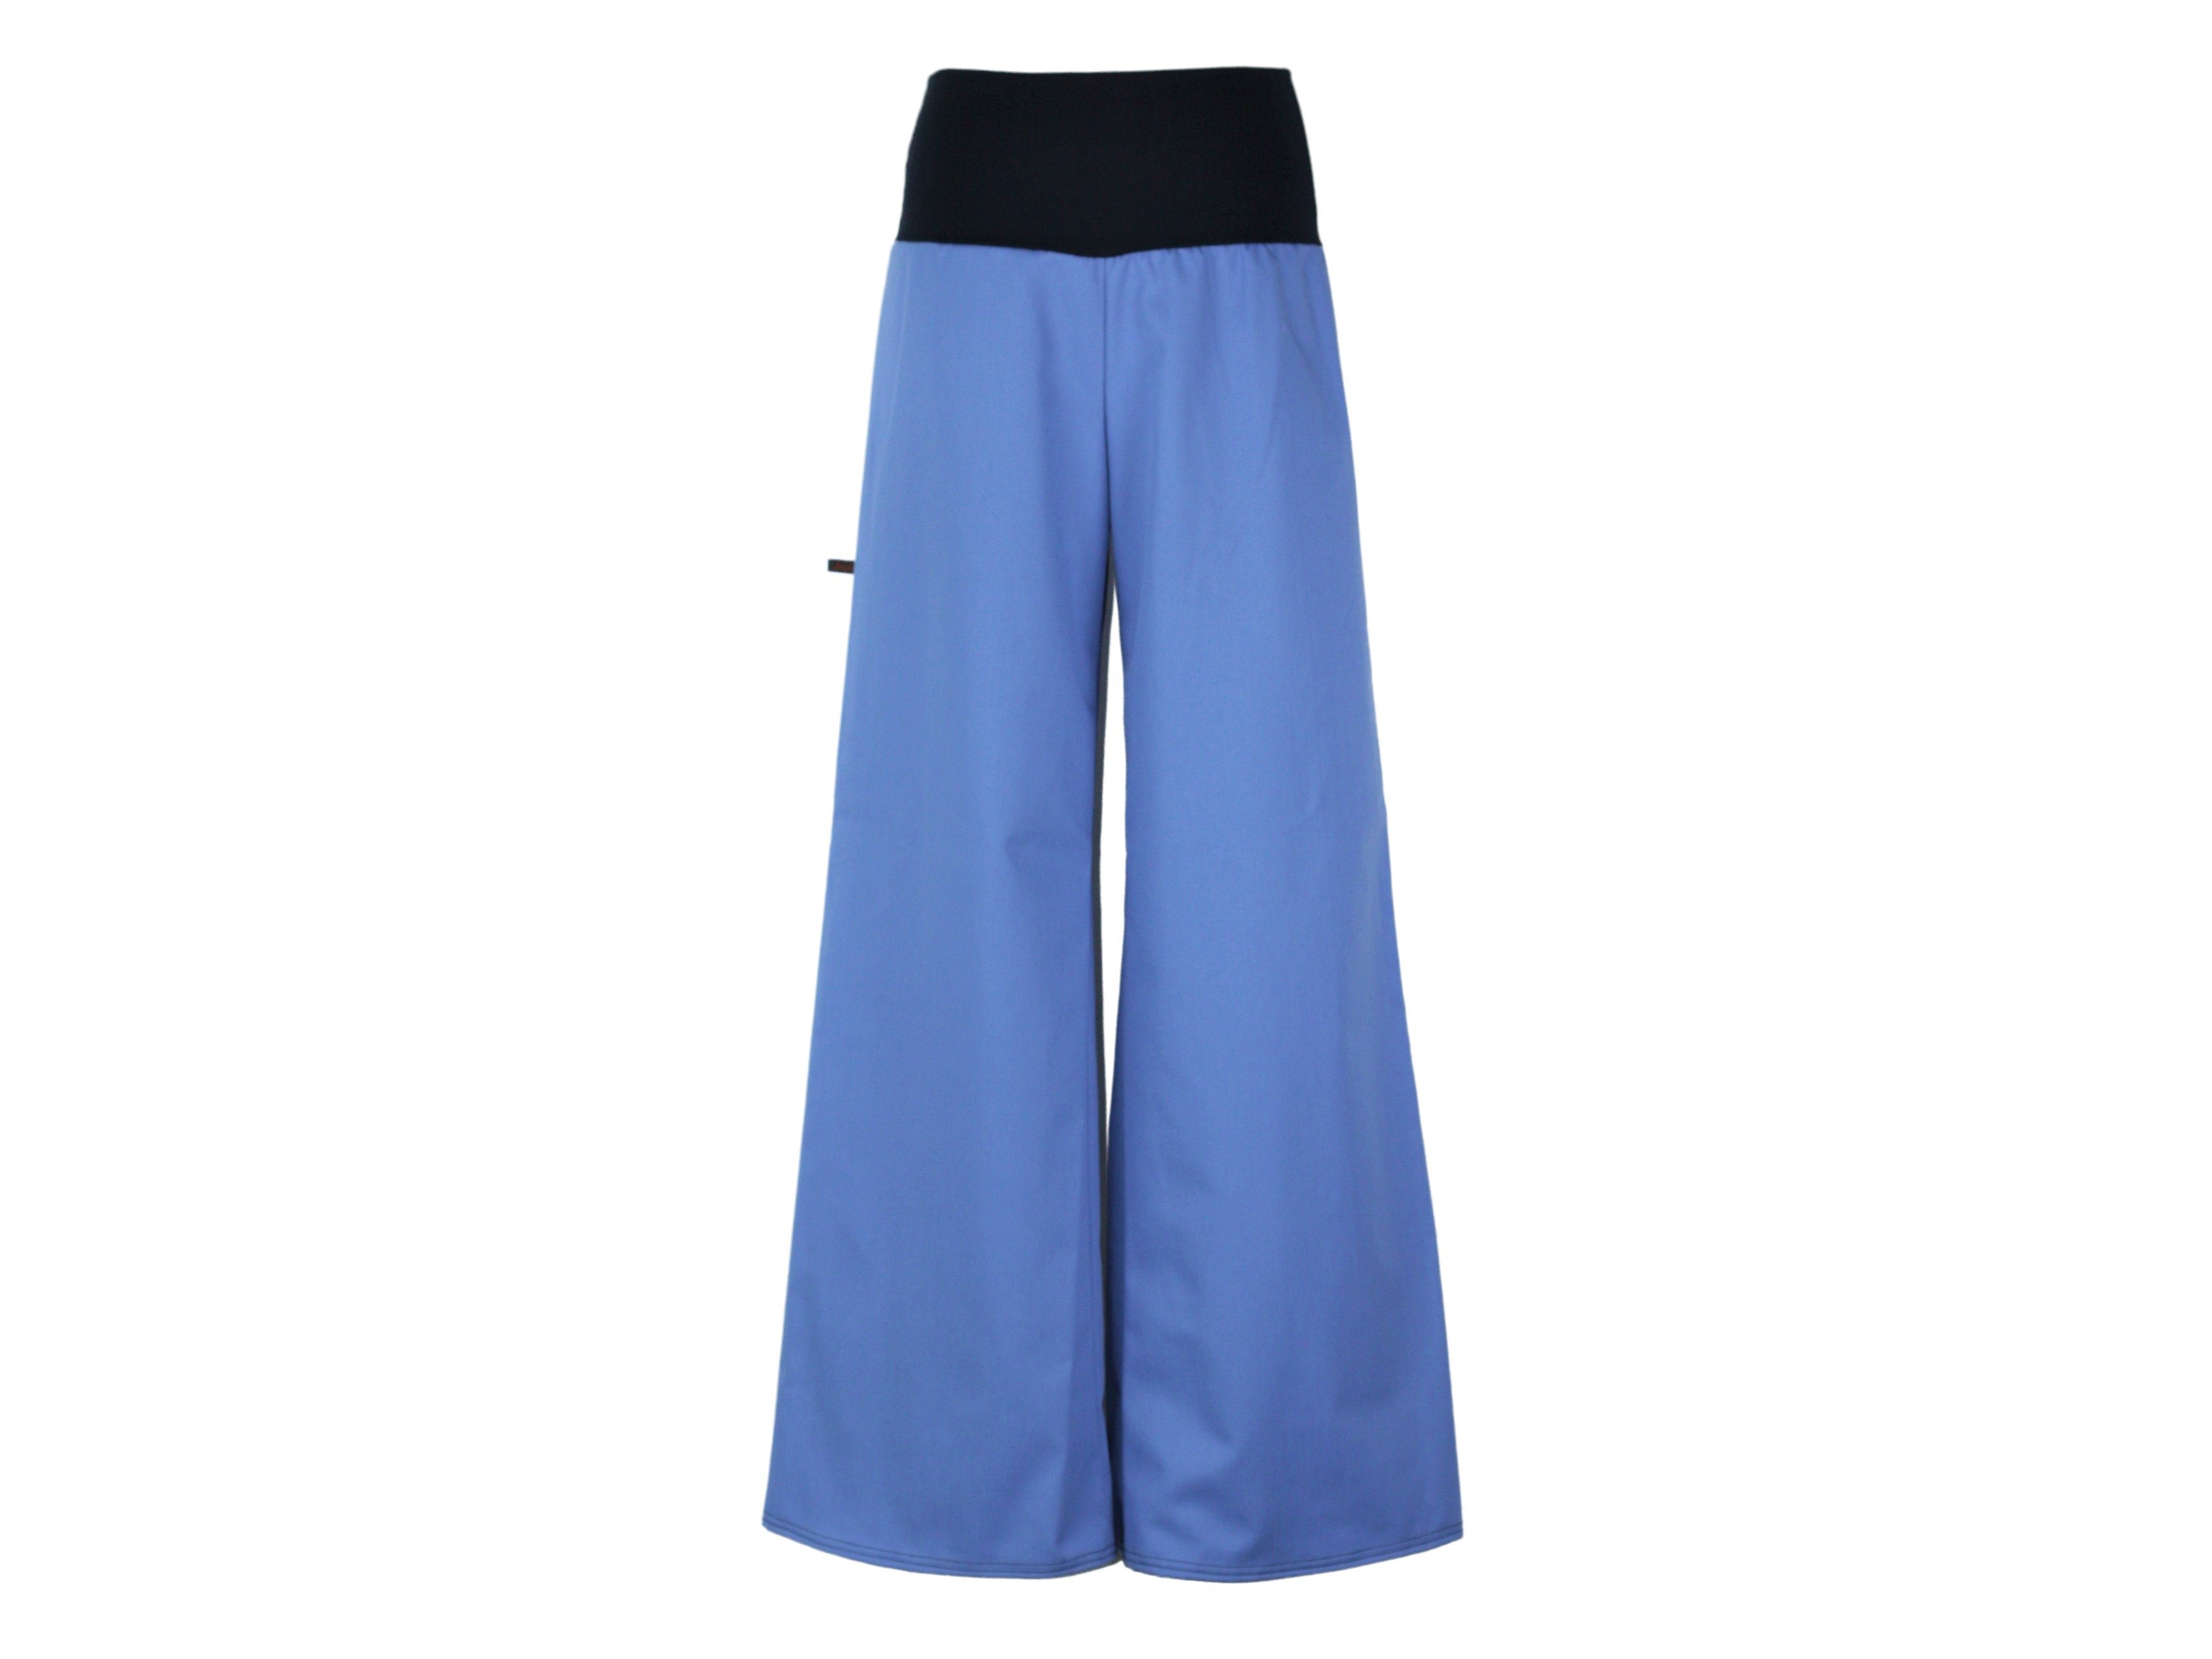 Marlene Stil Blau Stretch-Jeans dunkle design weites Bein